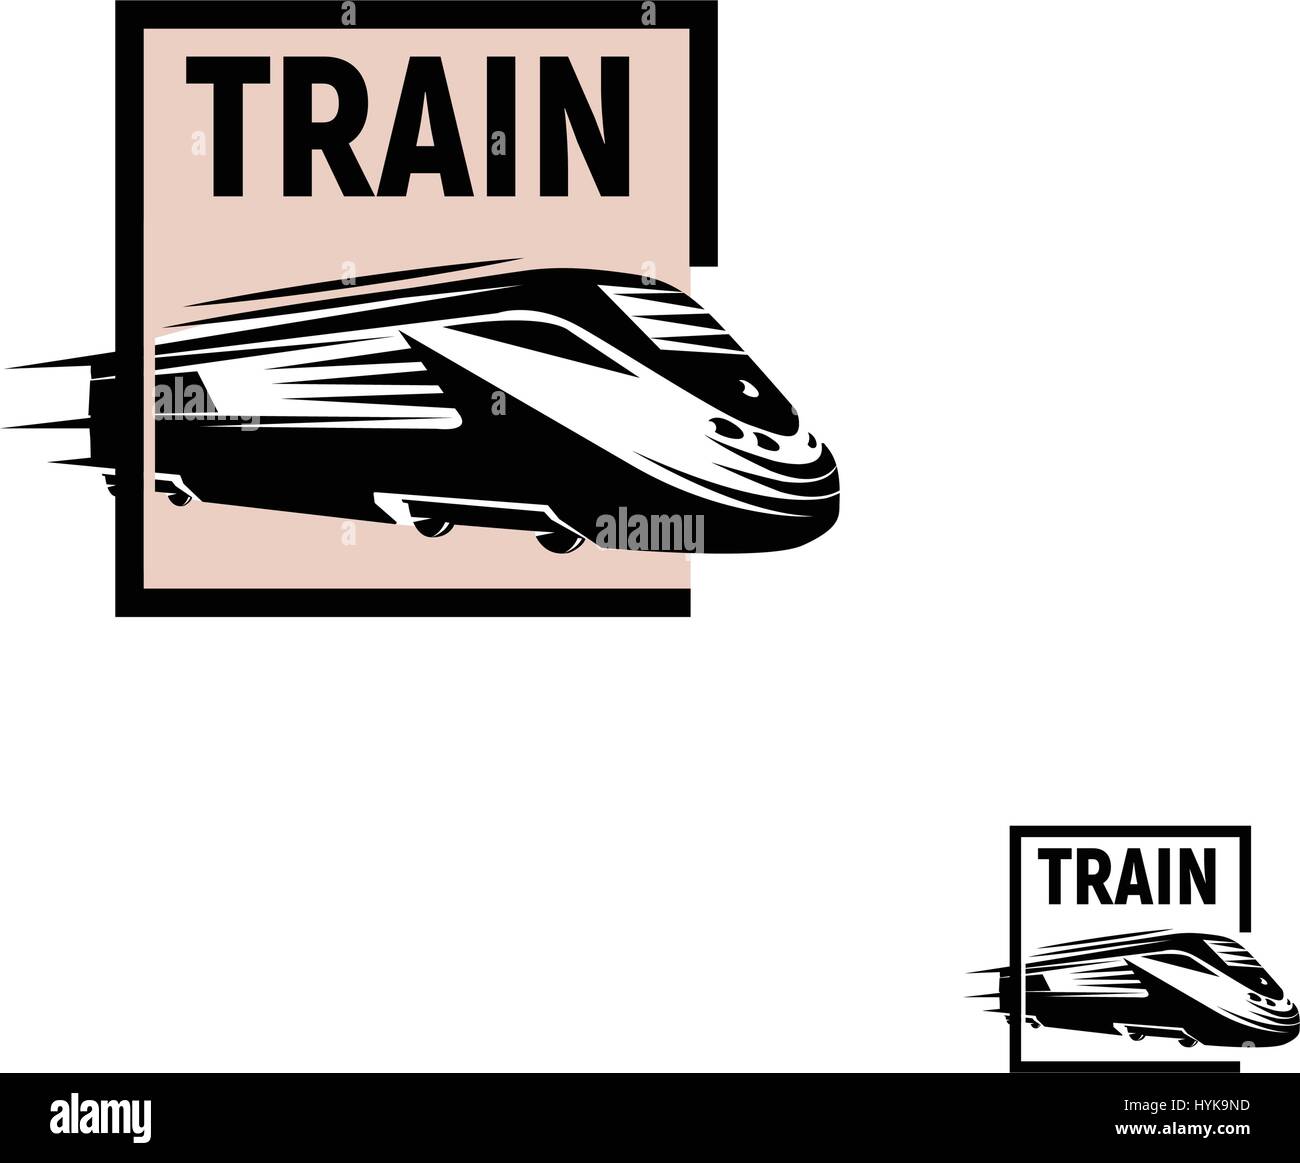 Couleur noire résumé isolés en train carré rose sur fond blanc logo monochrome, transport ferroviaire moderne logotype, élément de fer dans leur gravure vector illustration Illustration de Vecteur